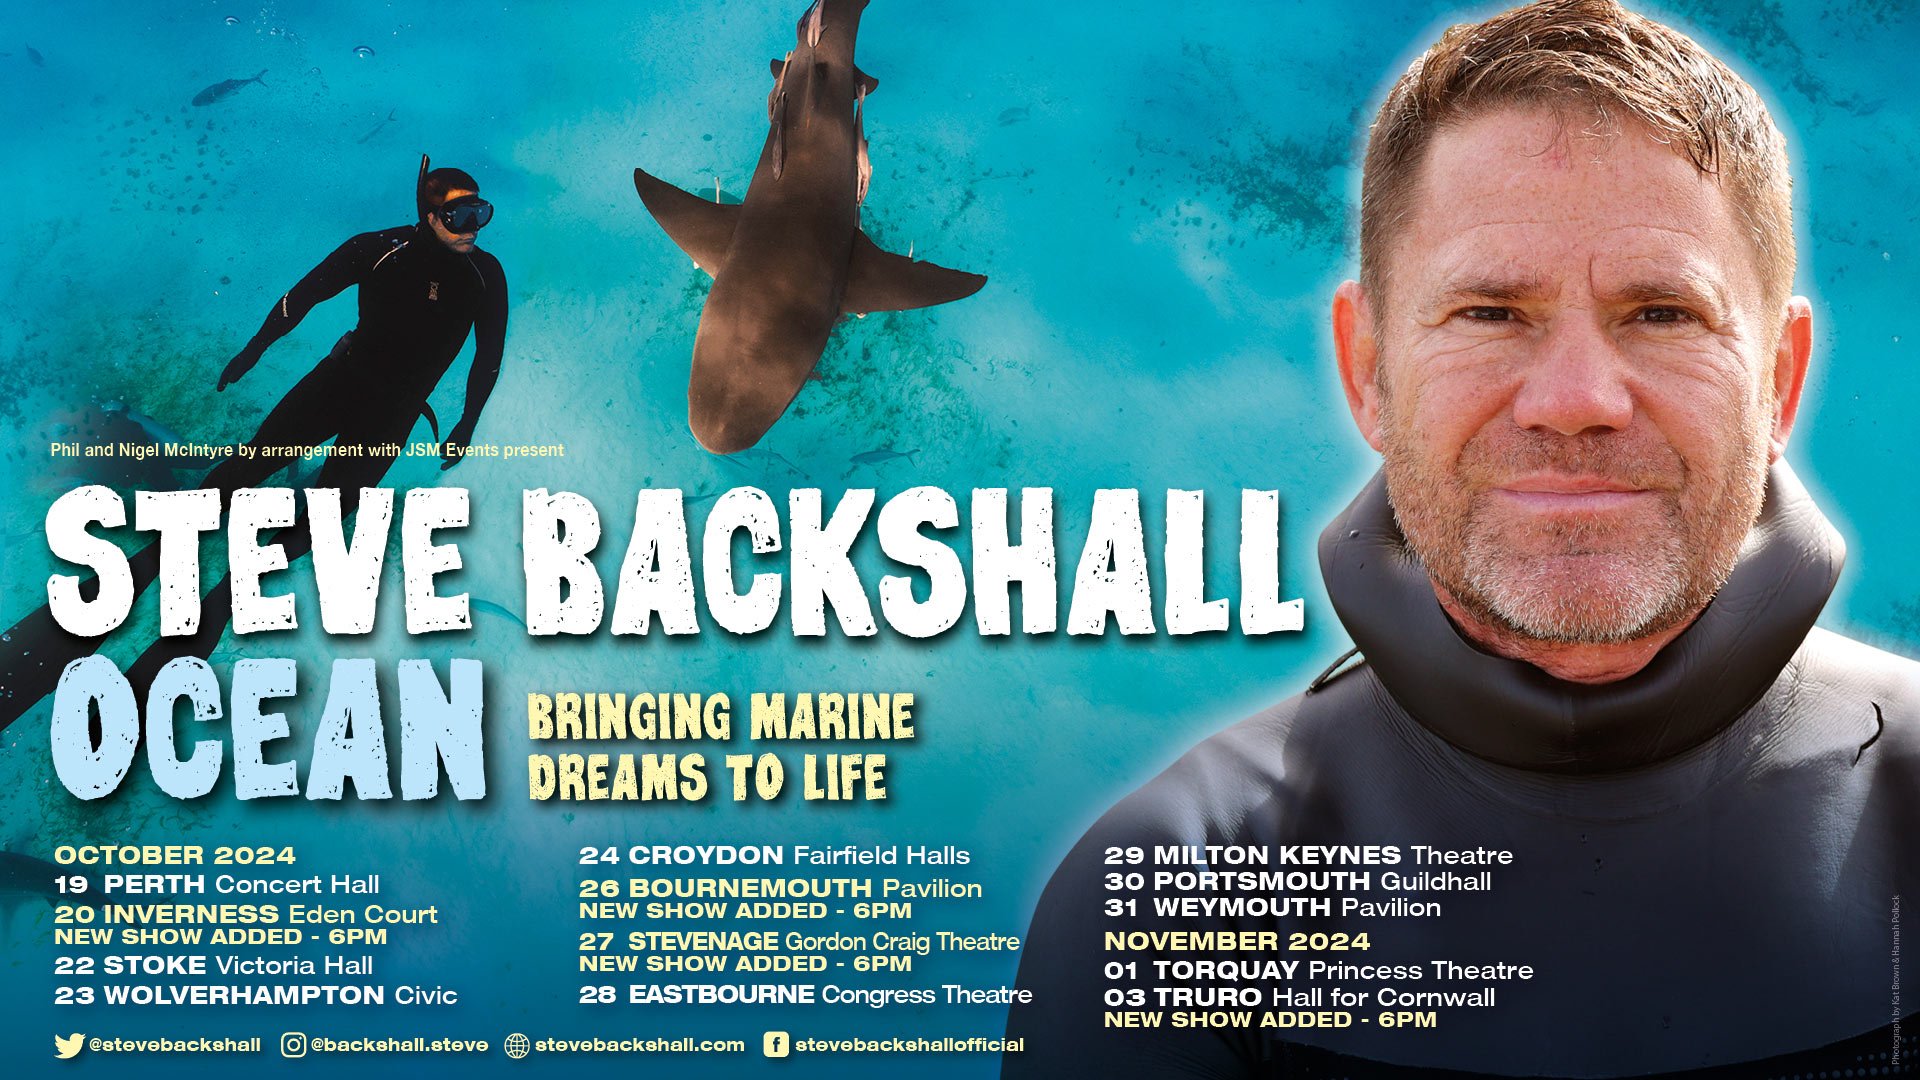 Steve Backshall – New Tour Dates Added! — Jo Sarsby